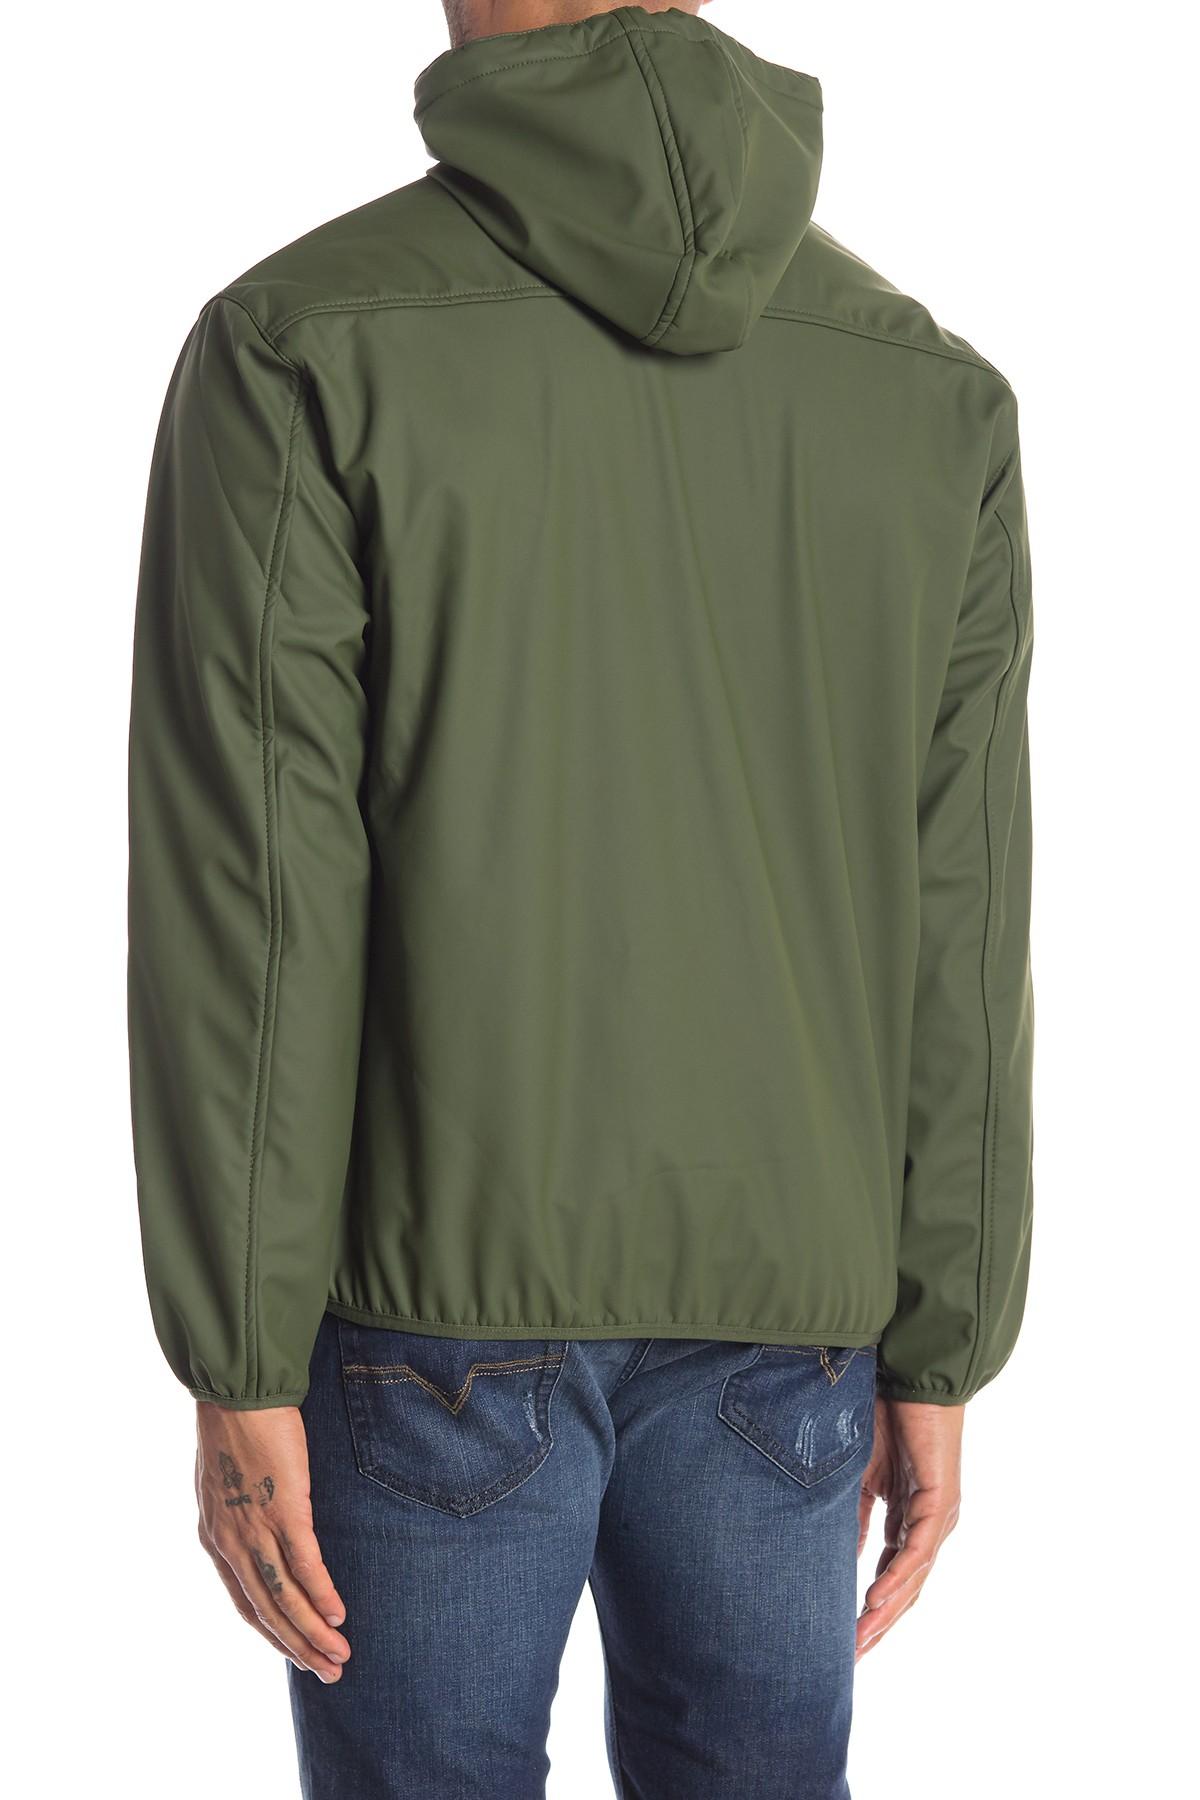 Weatherproof Fleece Lined Hooded Shirt Jacket in Green for Men - Lyst